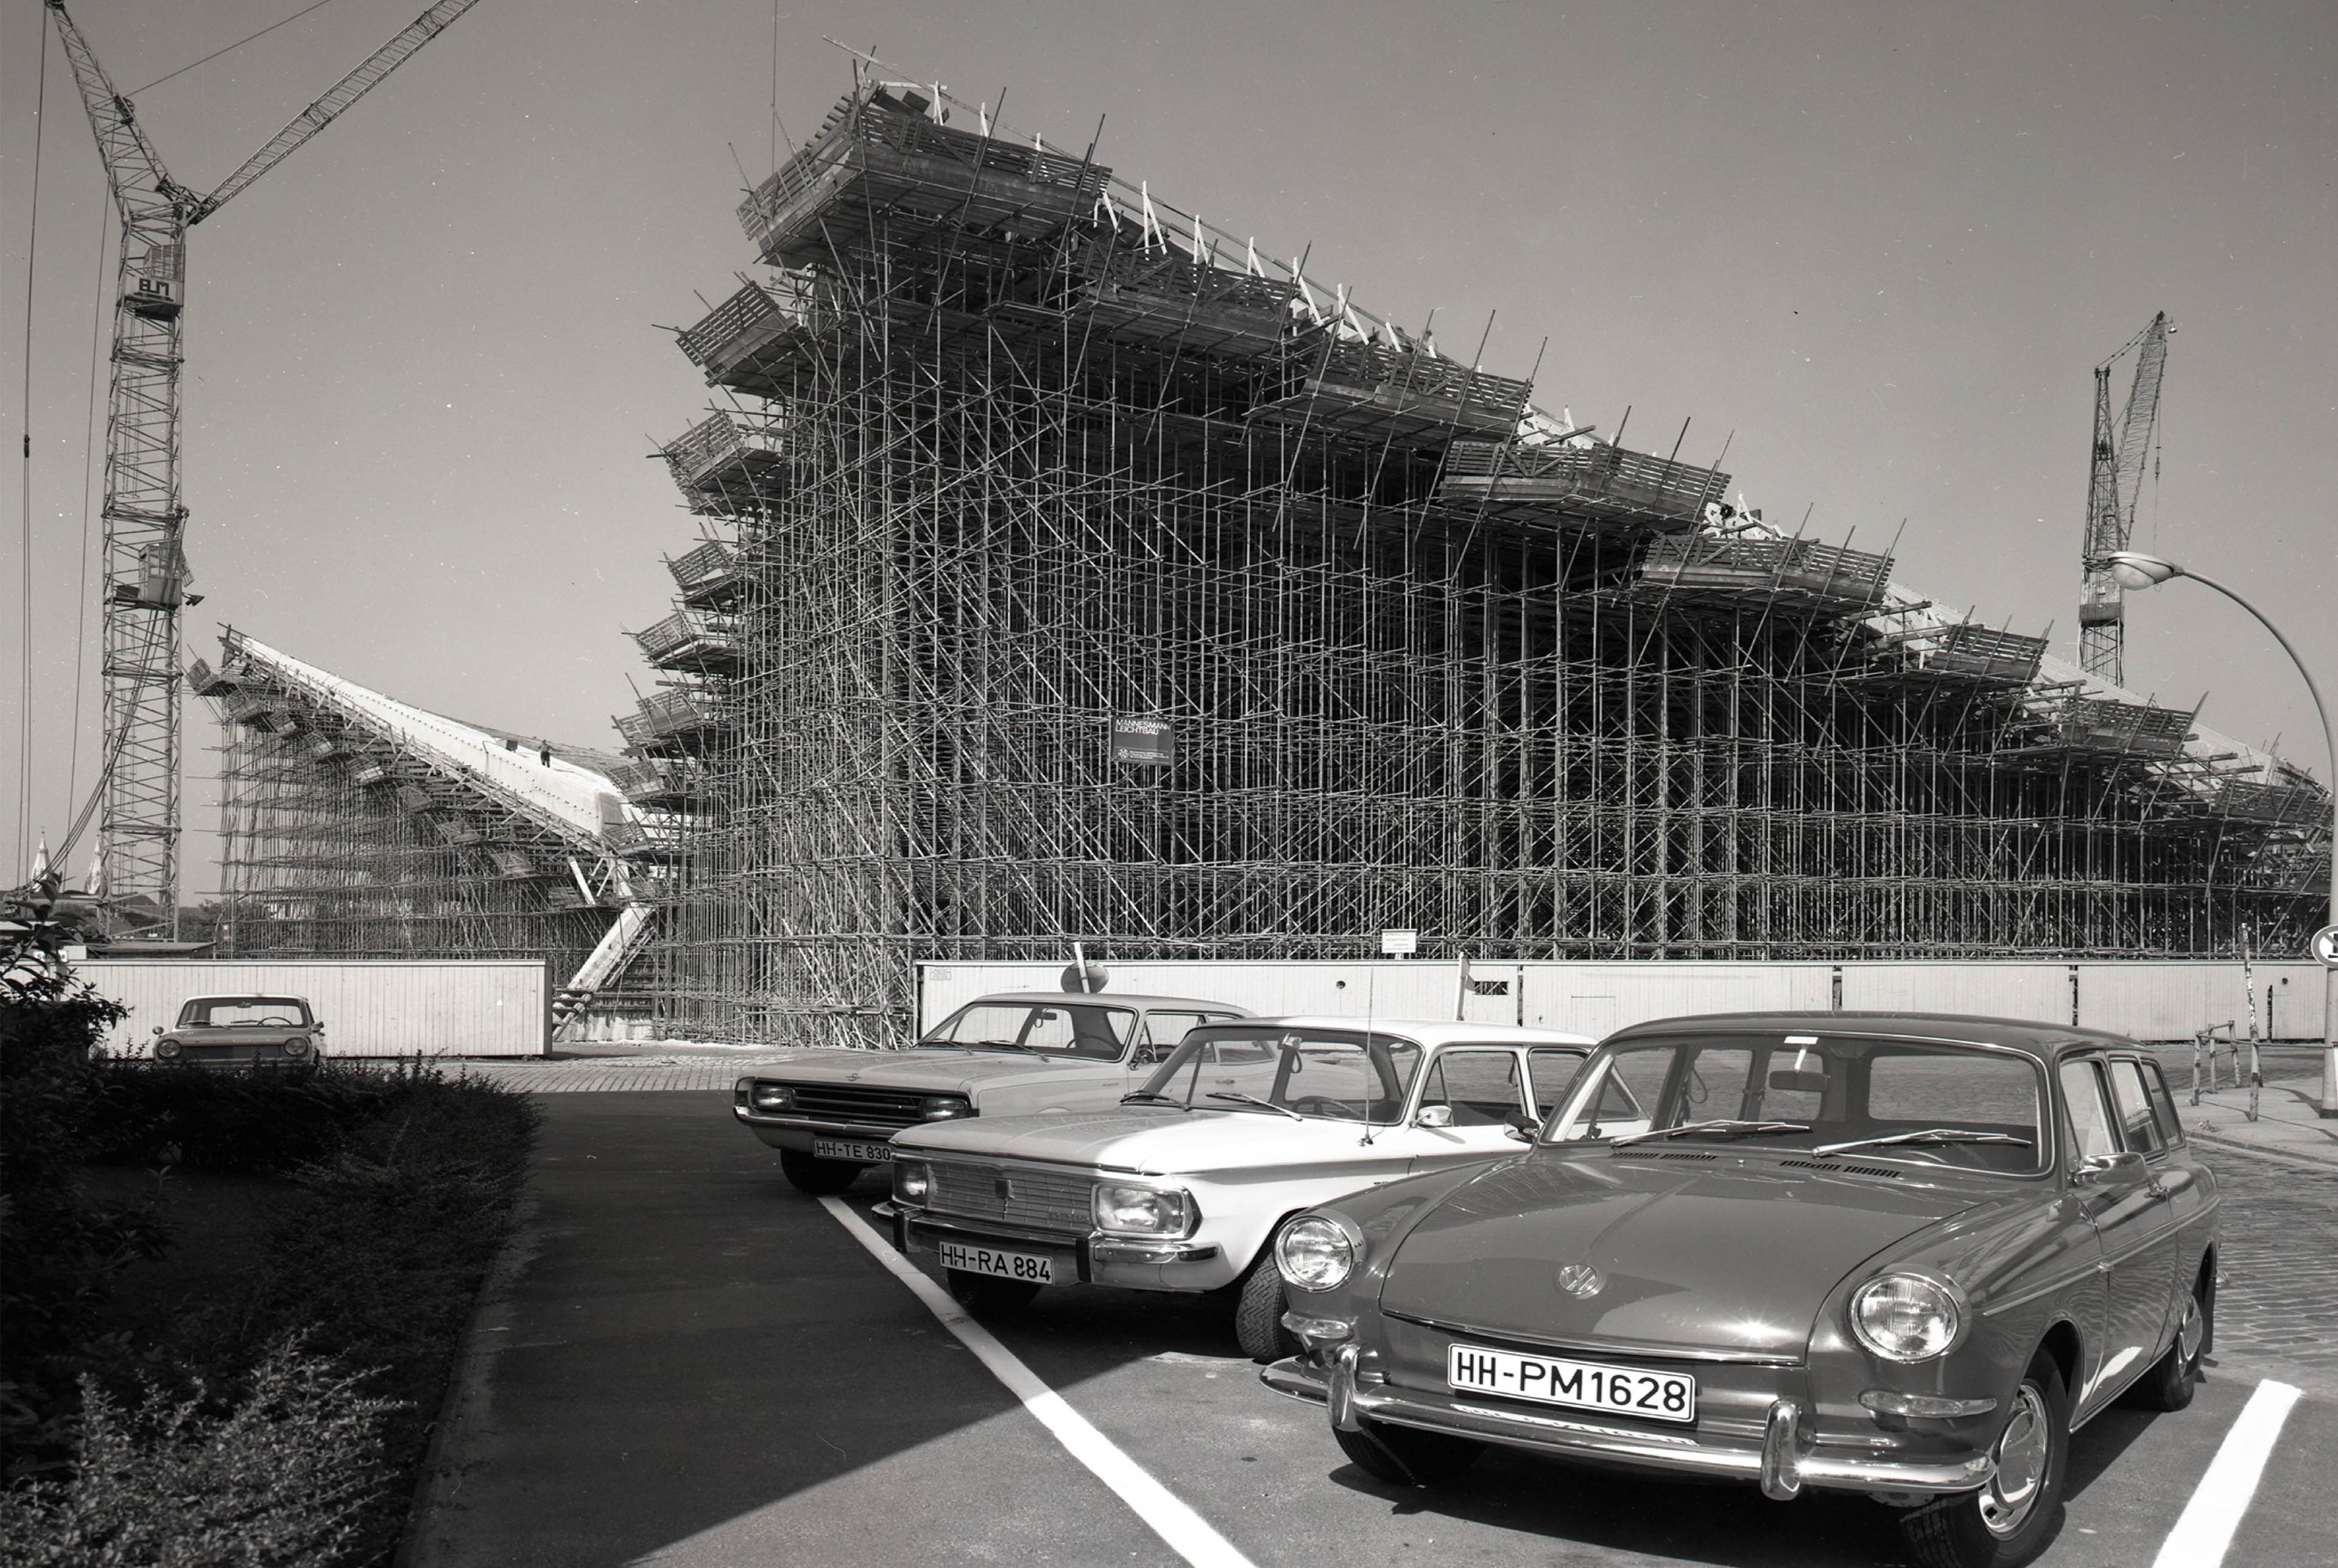 Blick vom Parkplatz auf drei Autos und im Hintergrund die Baukonstruktion der Alster-Schwimmhalle